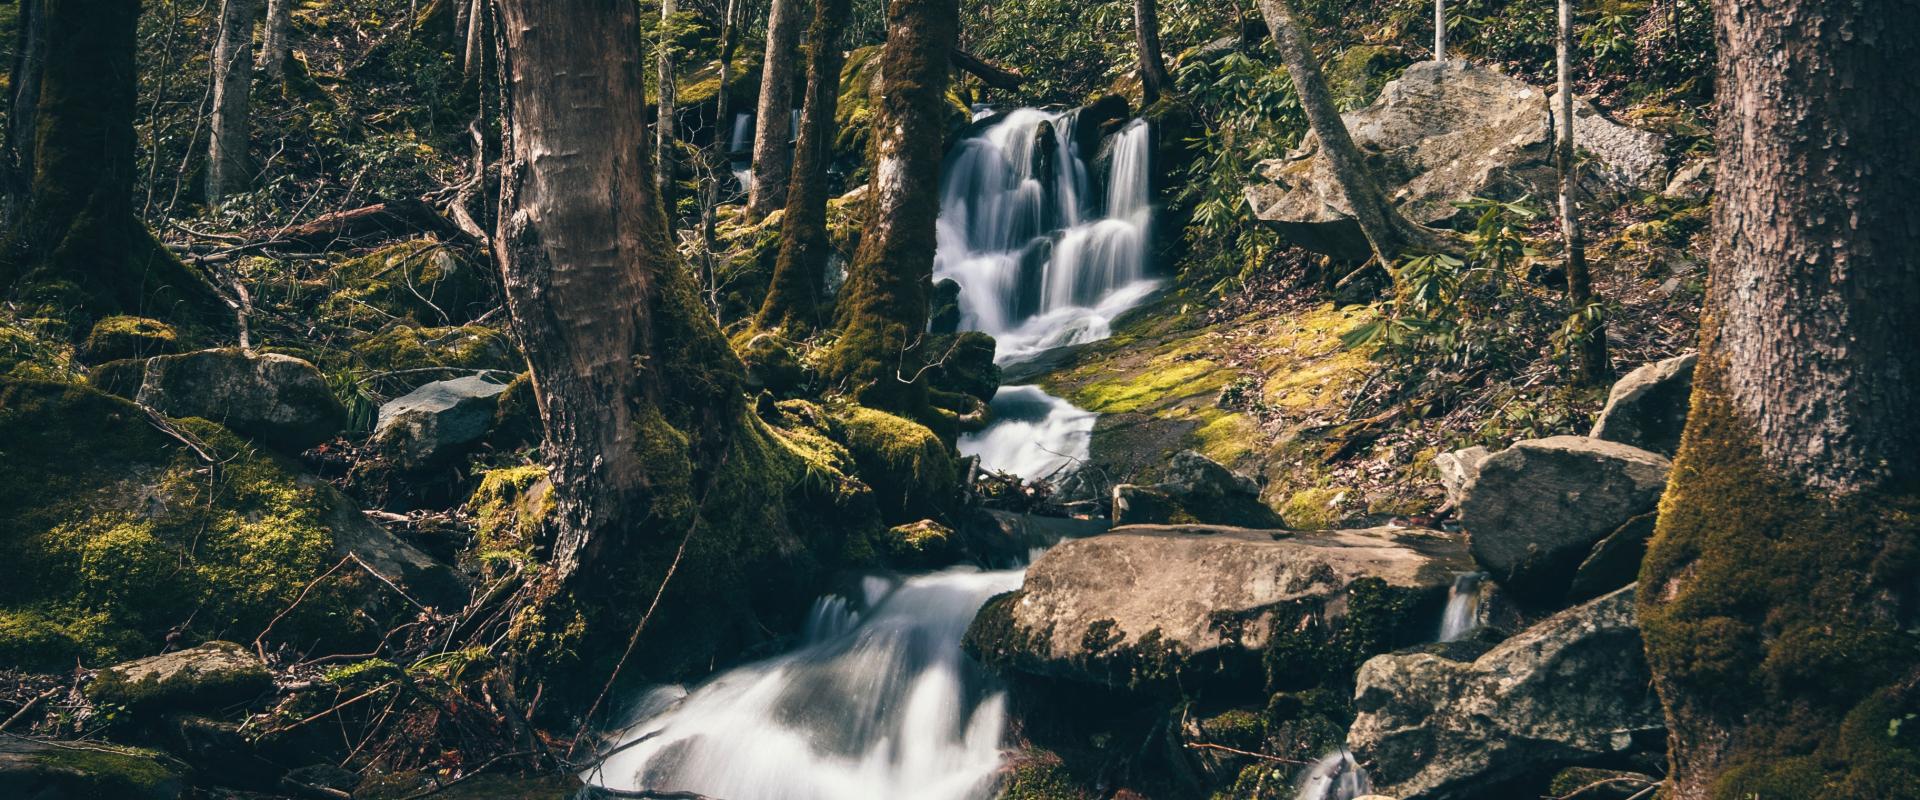 Photo d'eau coulant dans une rivière courant dans une forêt